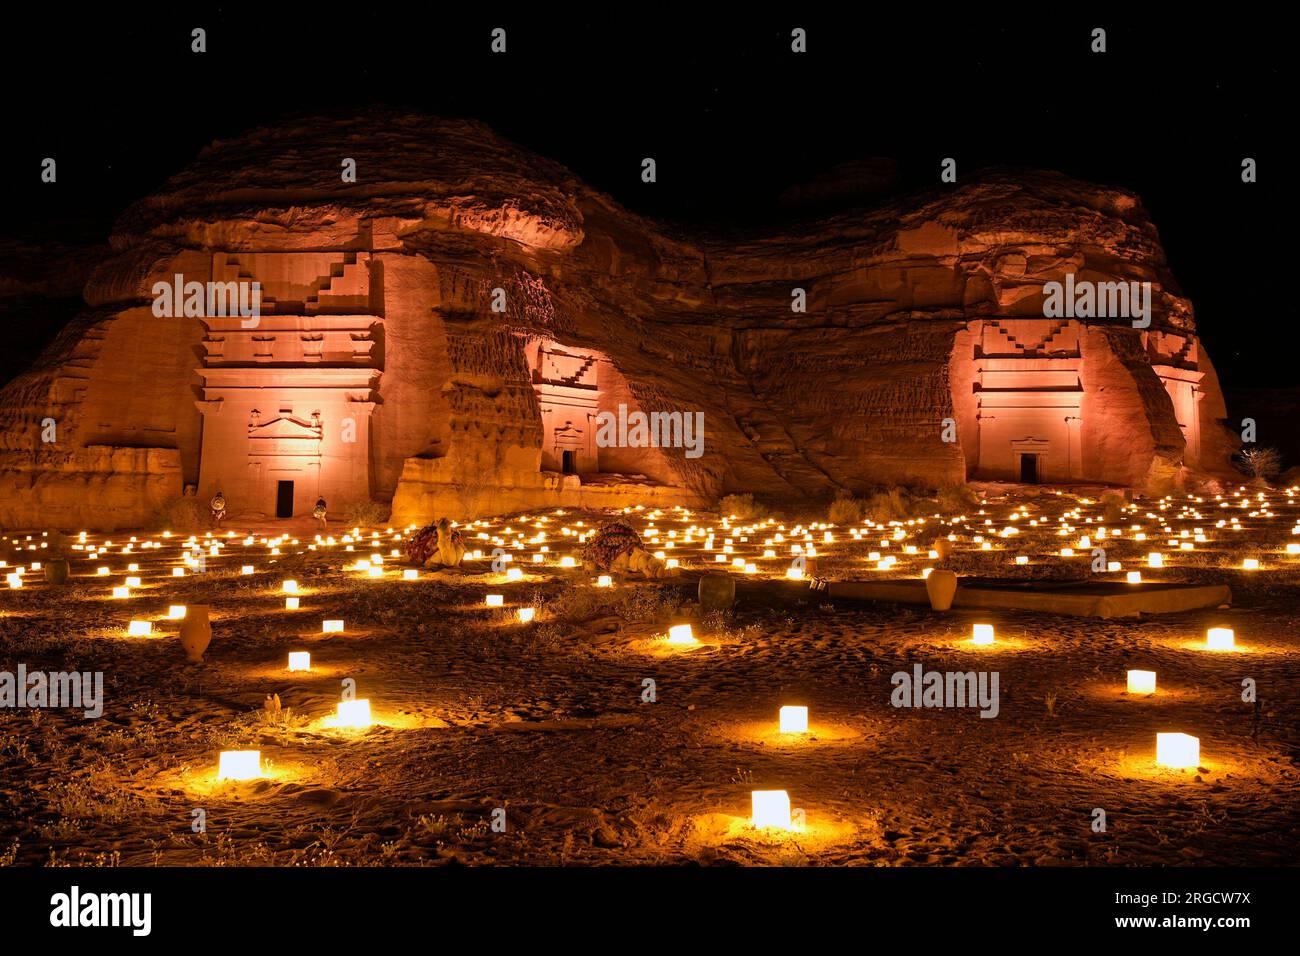 Alte Gräber von Hegra, beleuchtet durch Kerzenlicht, Alula, Saudi-Arabien Stockfoto